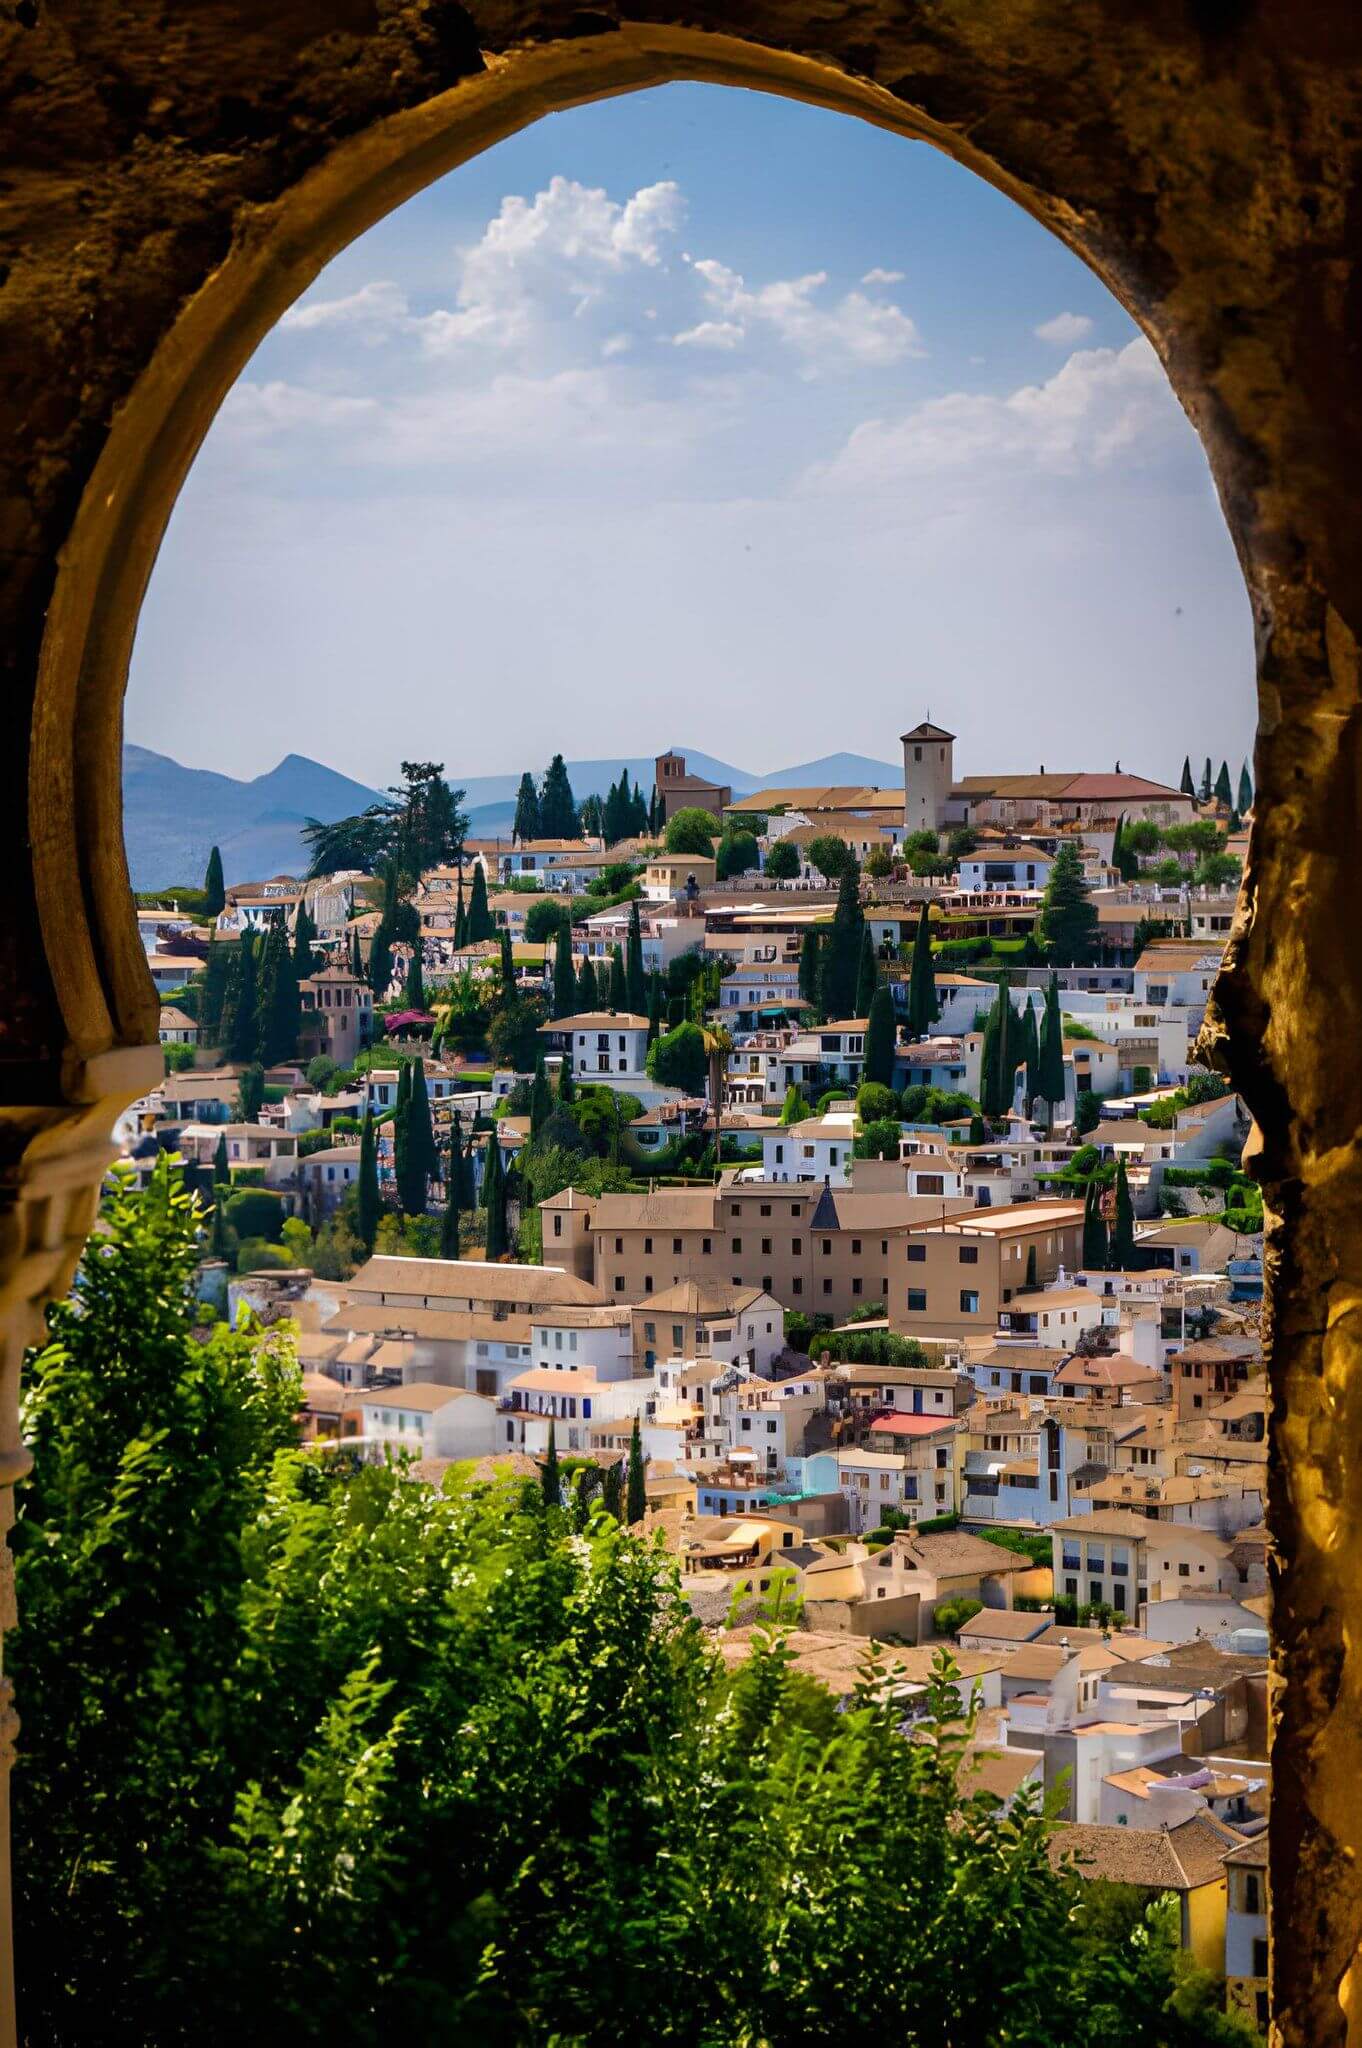 Descubre la historia y la belleza del Albaicín, el barrio más emblemático de Granada